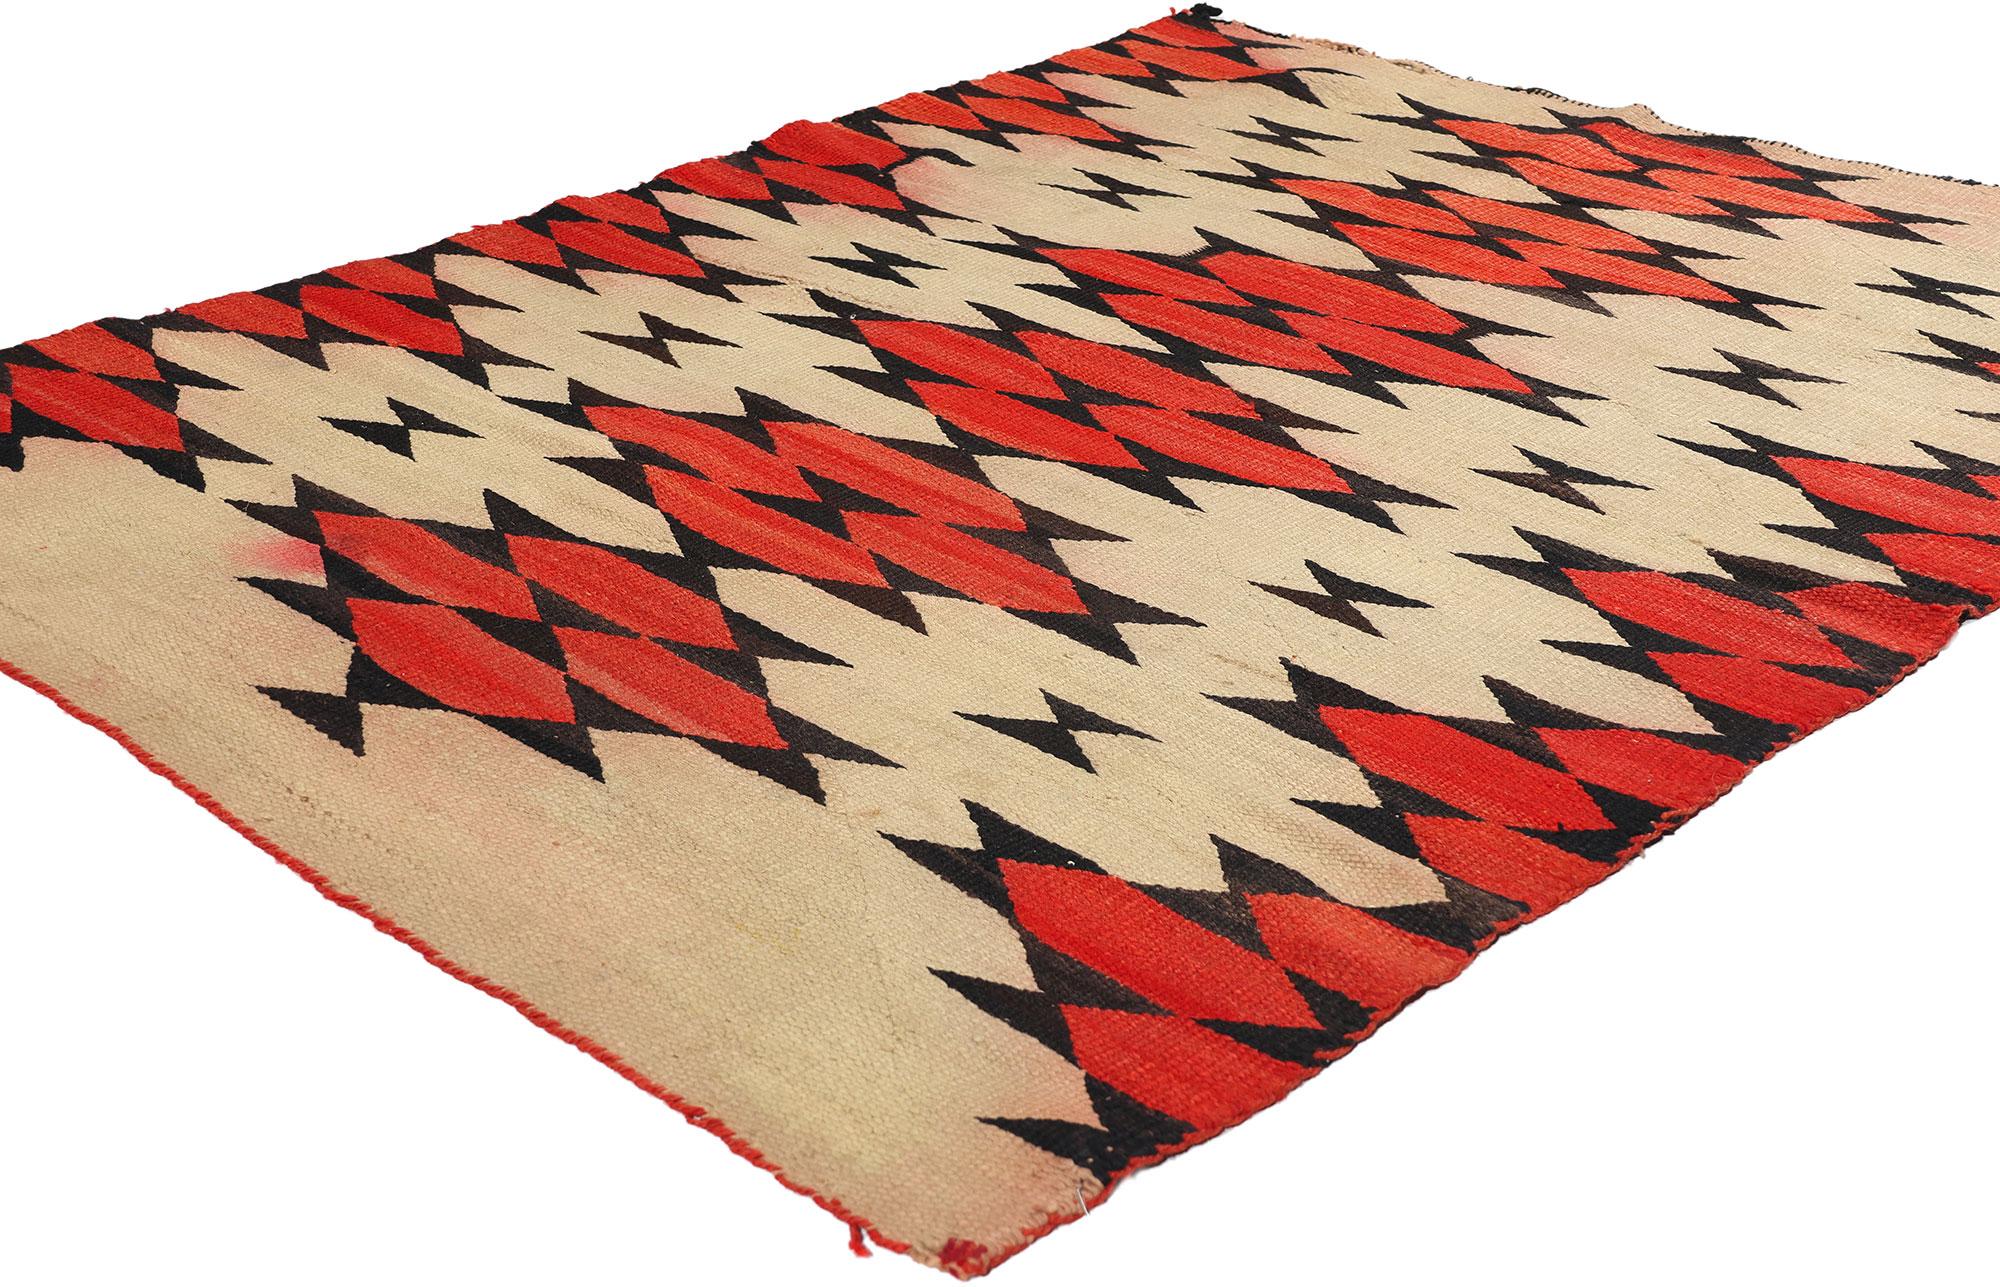 78746 Antiker Ganado Navajo-Teppich, 04'00 x 05'07. Die von geschickten Navajo-Kunsthandwerkern in der Region Ganado im Nordosten Arizonas gefertigten Ganado-Teppiche werden sorgfältig mit Wolle von Navajo-Churro-Schafen gewebt, die in dieser Region